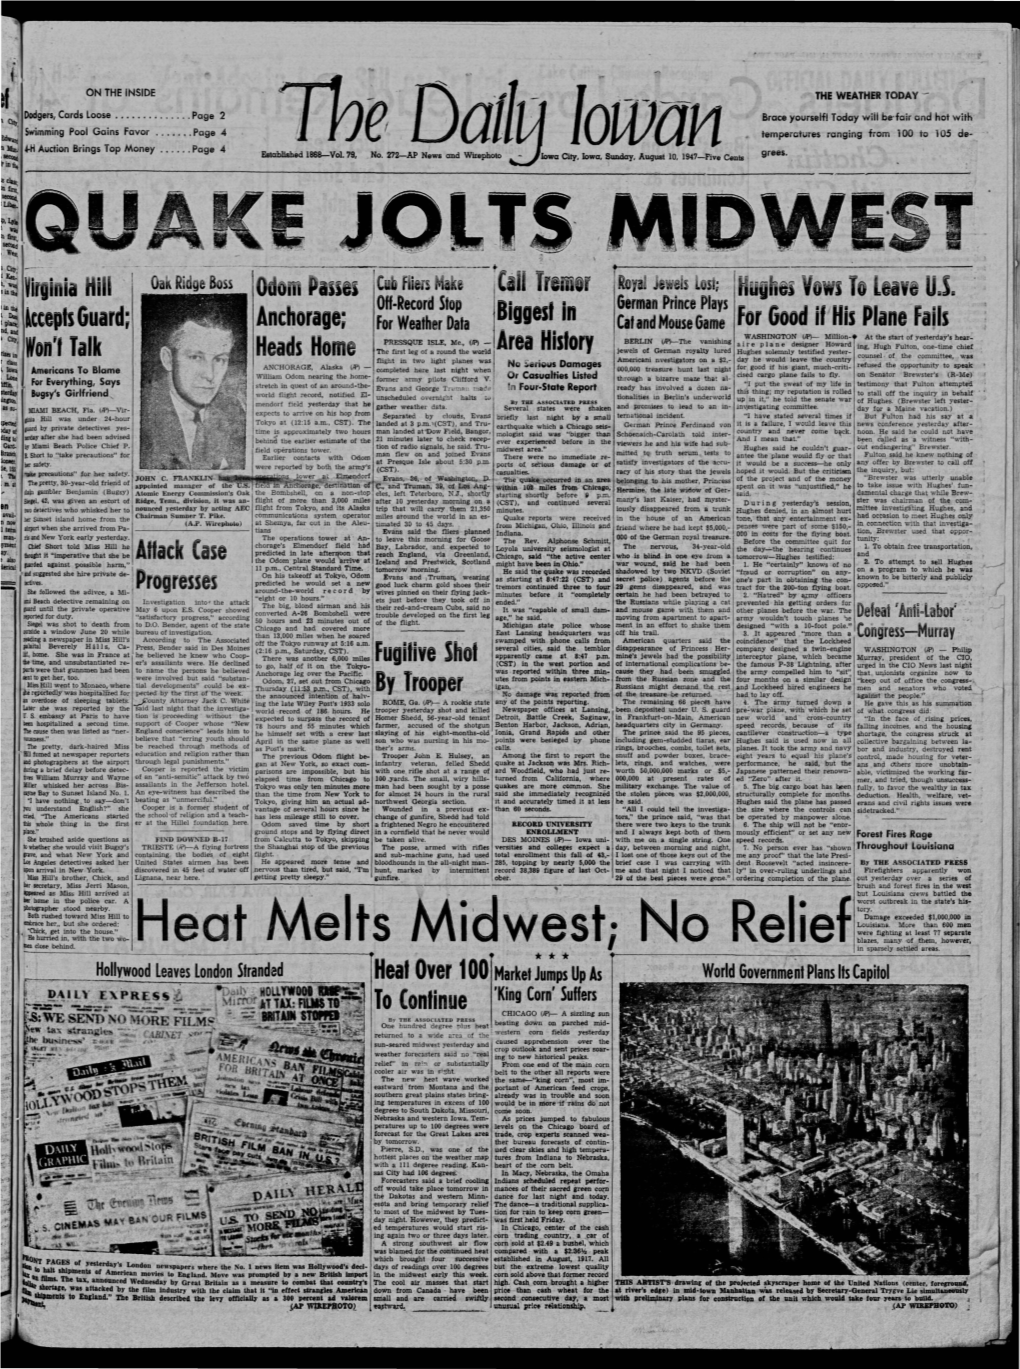 Daily Iowan (Iowa City, Iowa), 1947-08-10